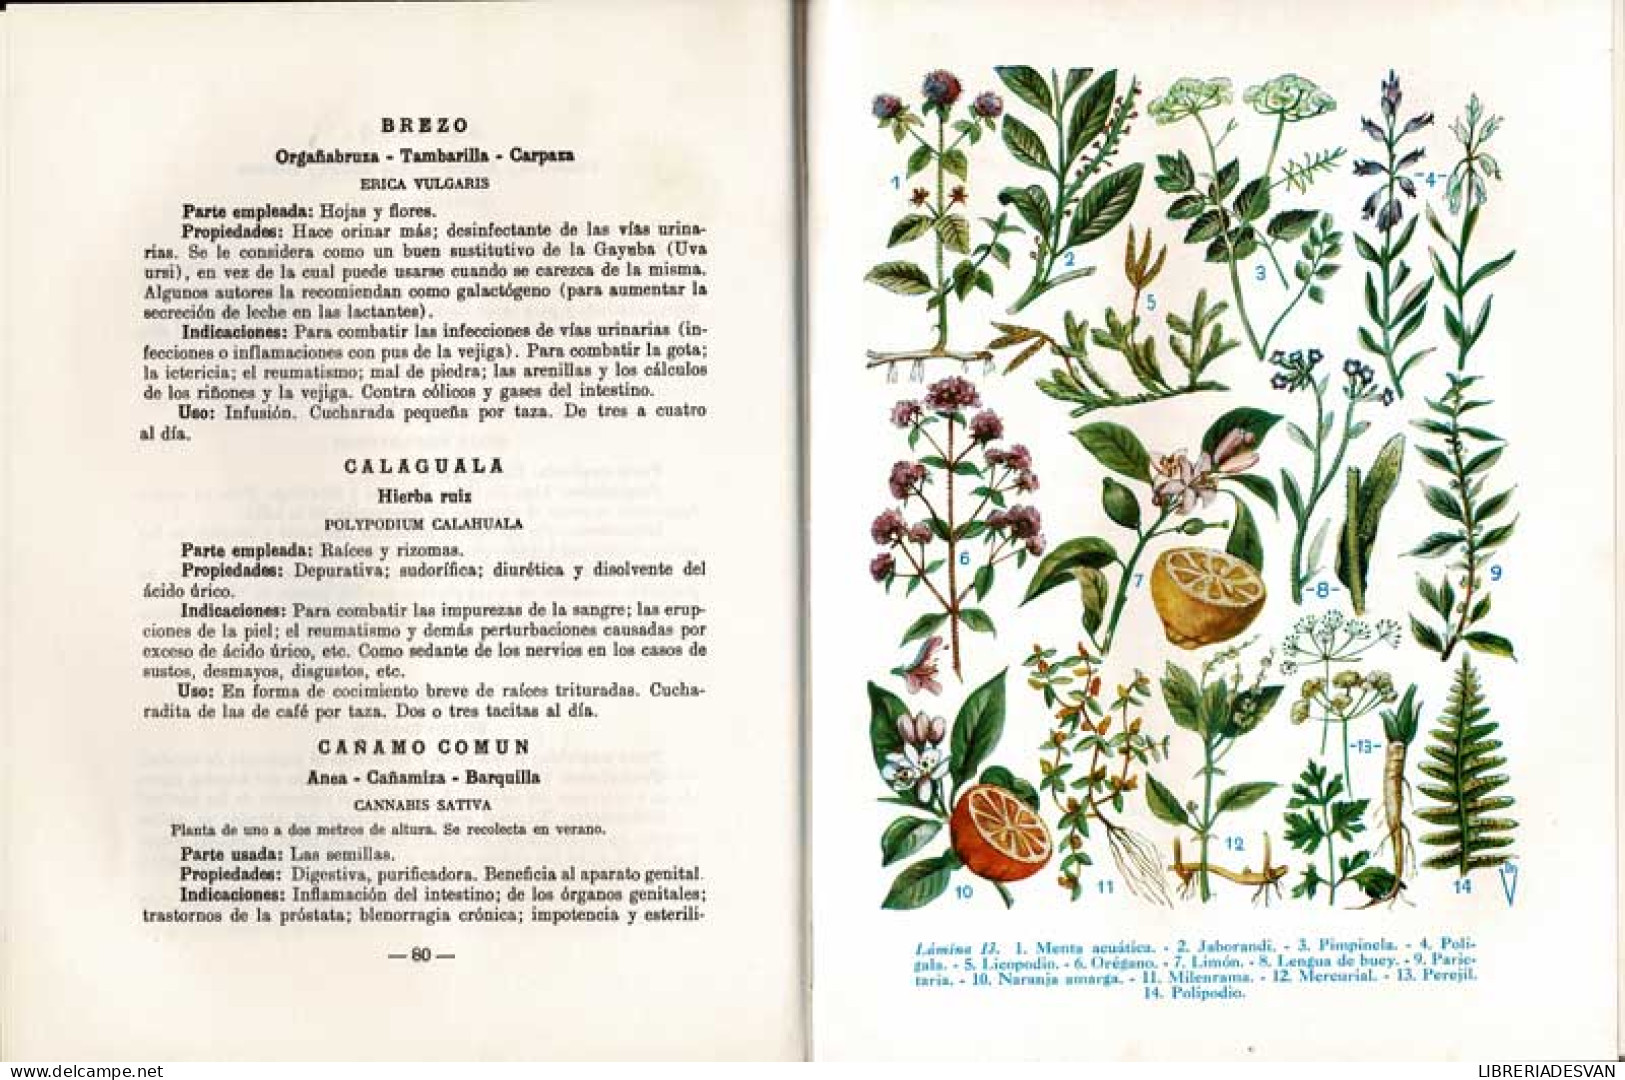 Plantas Medicinales. Las Enfermedades Y Su Tratamiento Por Las Plantas - Andrián Vander - Santé Et Beauté